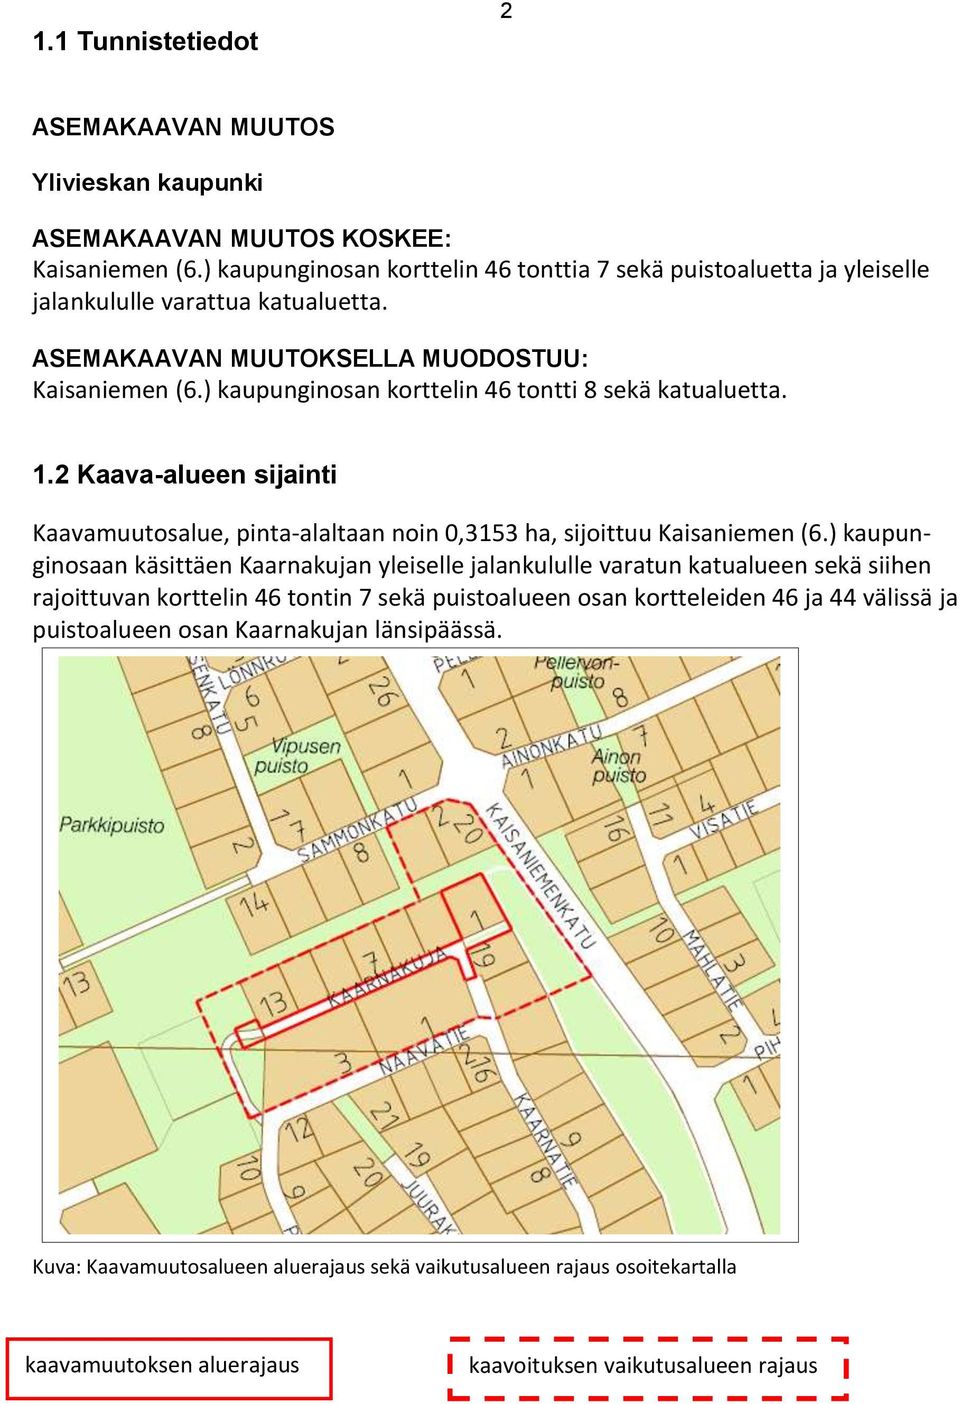 ) kaupunginosan korttelin 46 tontti 8 sekä katualuetta. 1.2 Kaava-alueen sijainti Kaavamuutosalue, pinta-alaltaan noin 0,3153 ha, sijoittuu Kaisaniemen (6.